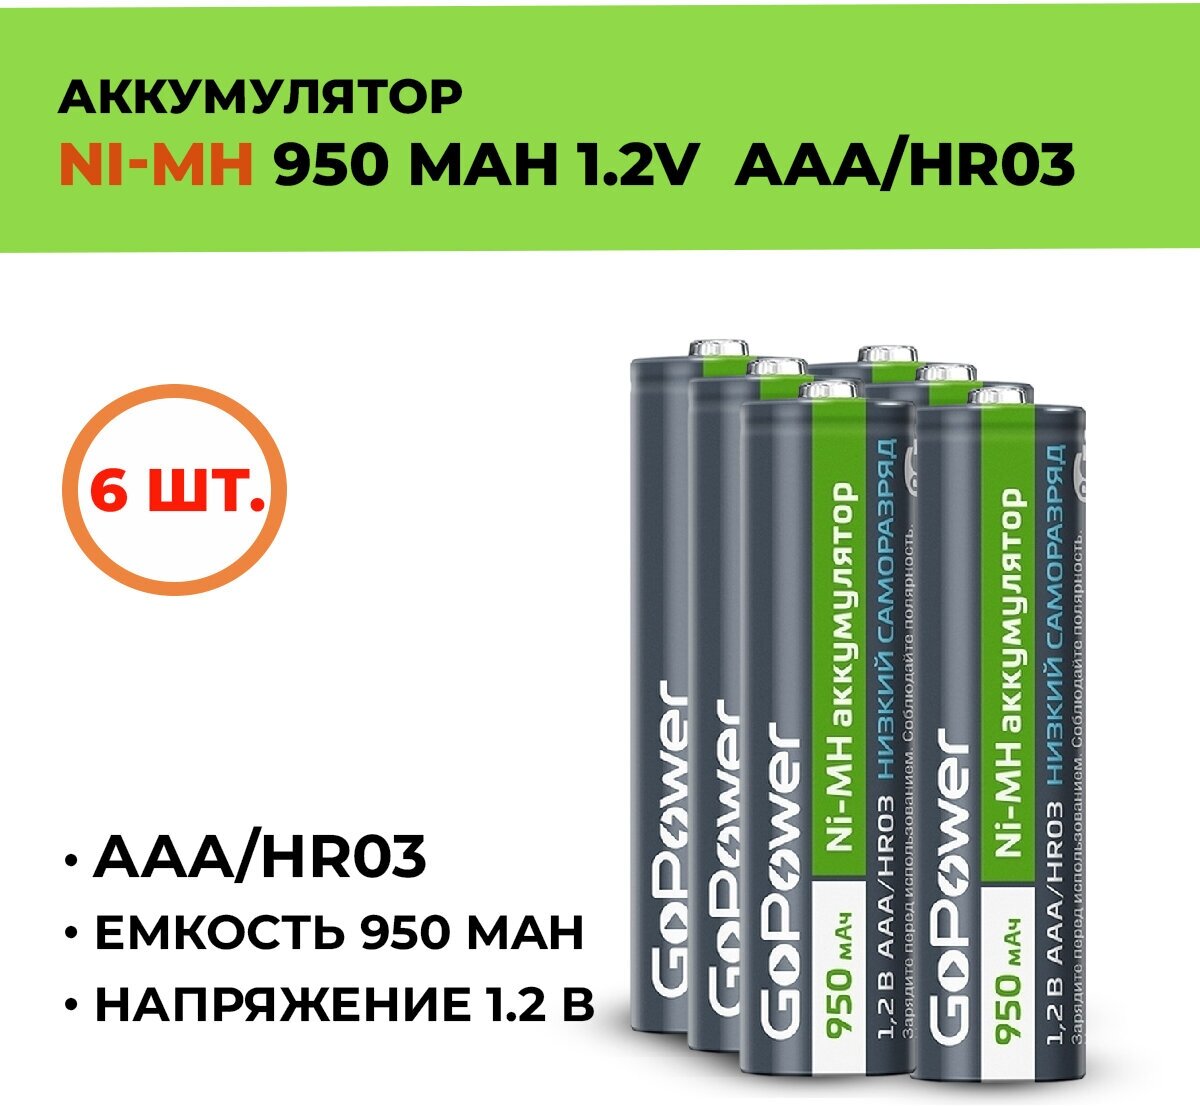 6шт. Аккумулятор GoPower 950 мАч, ААА/HR03, 1.2 В